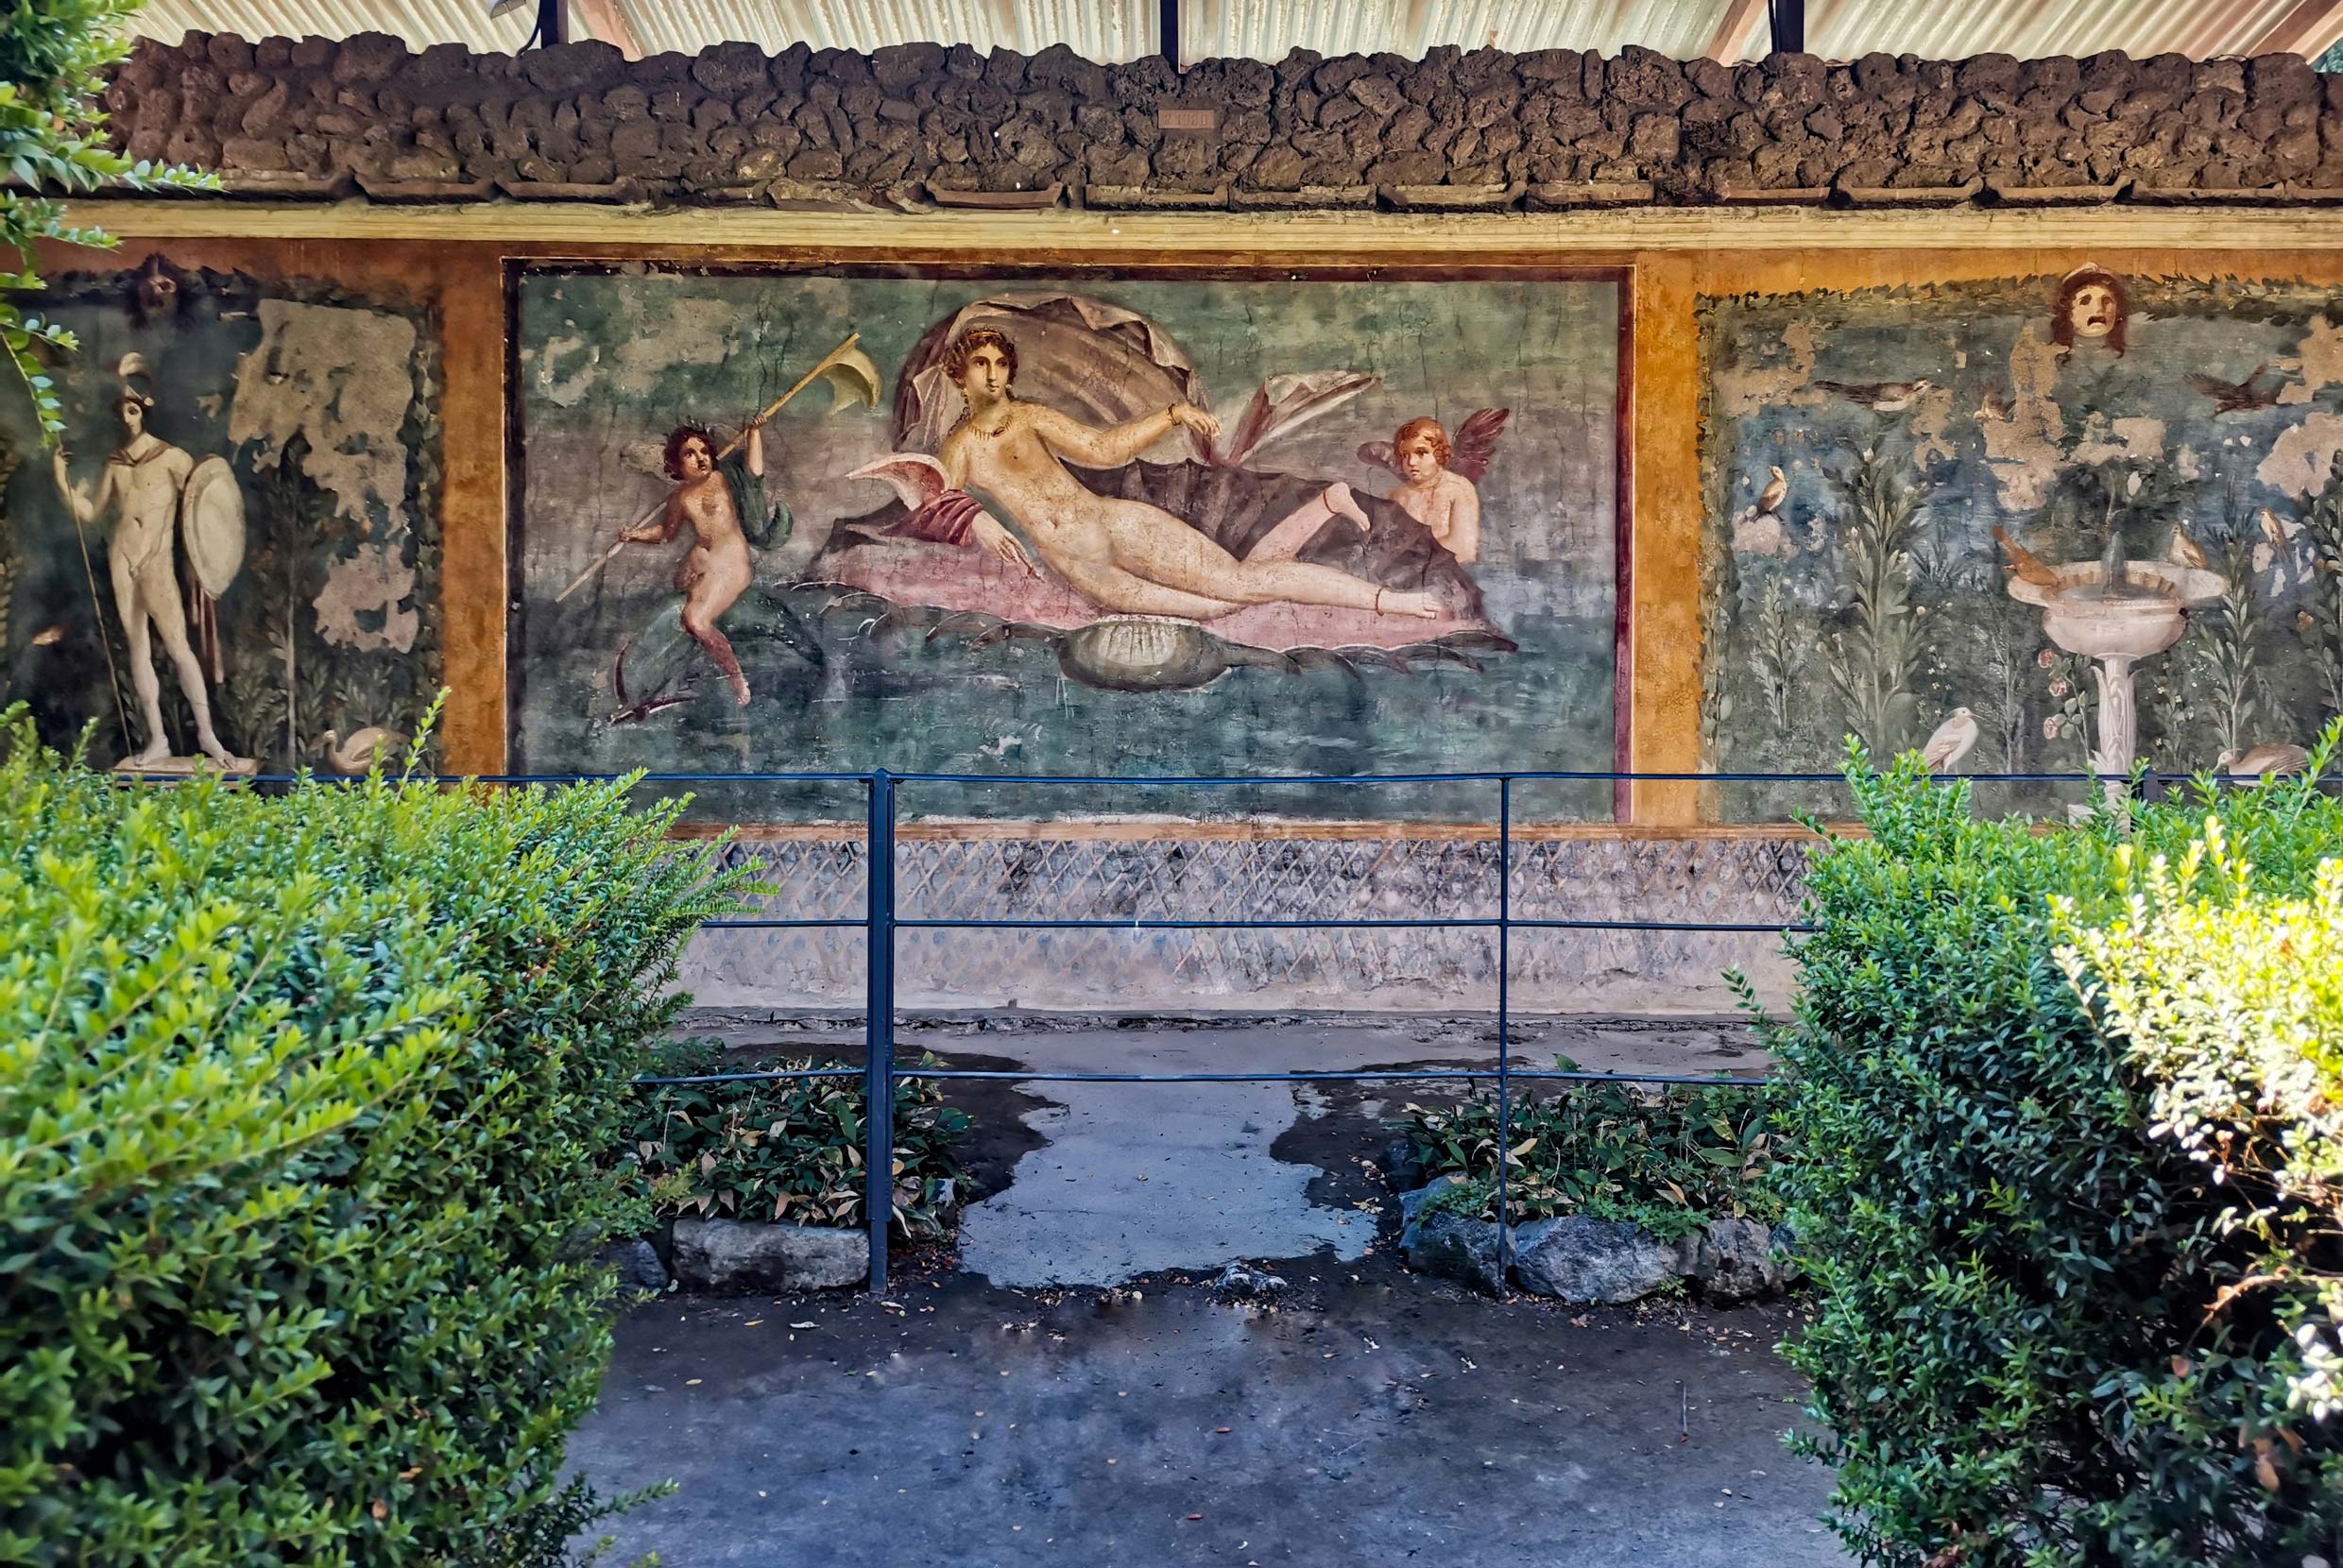 Venere in Conchiglia, Casa di Venere, Pompei - su concessione del Ministero della Cultura - Parco Archeologico di Pompei - Credit Silvia Vacca